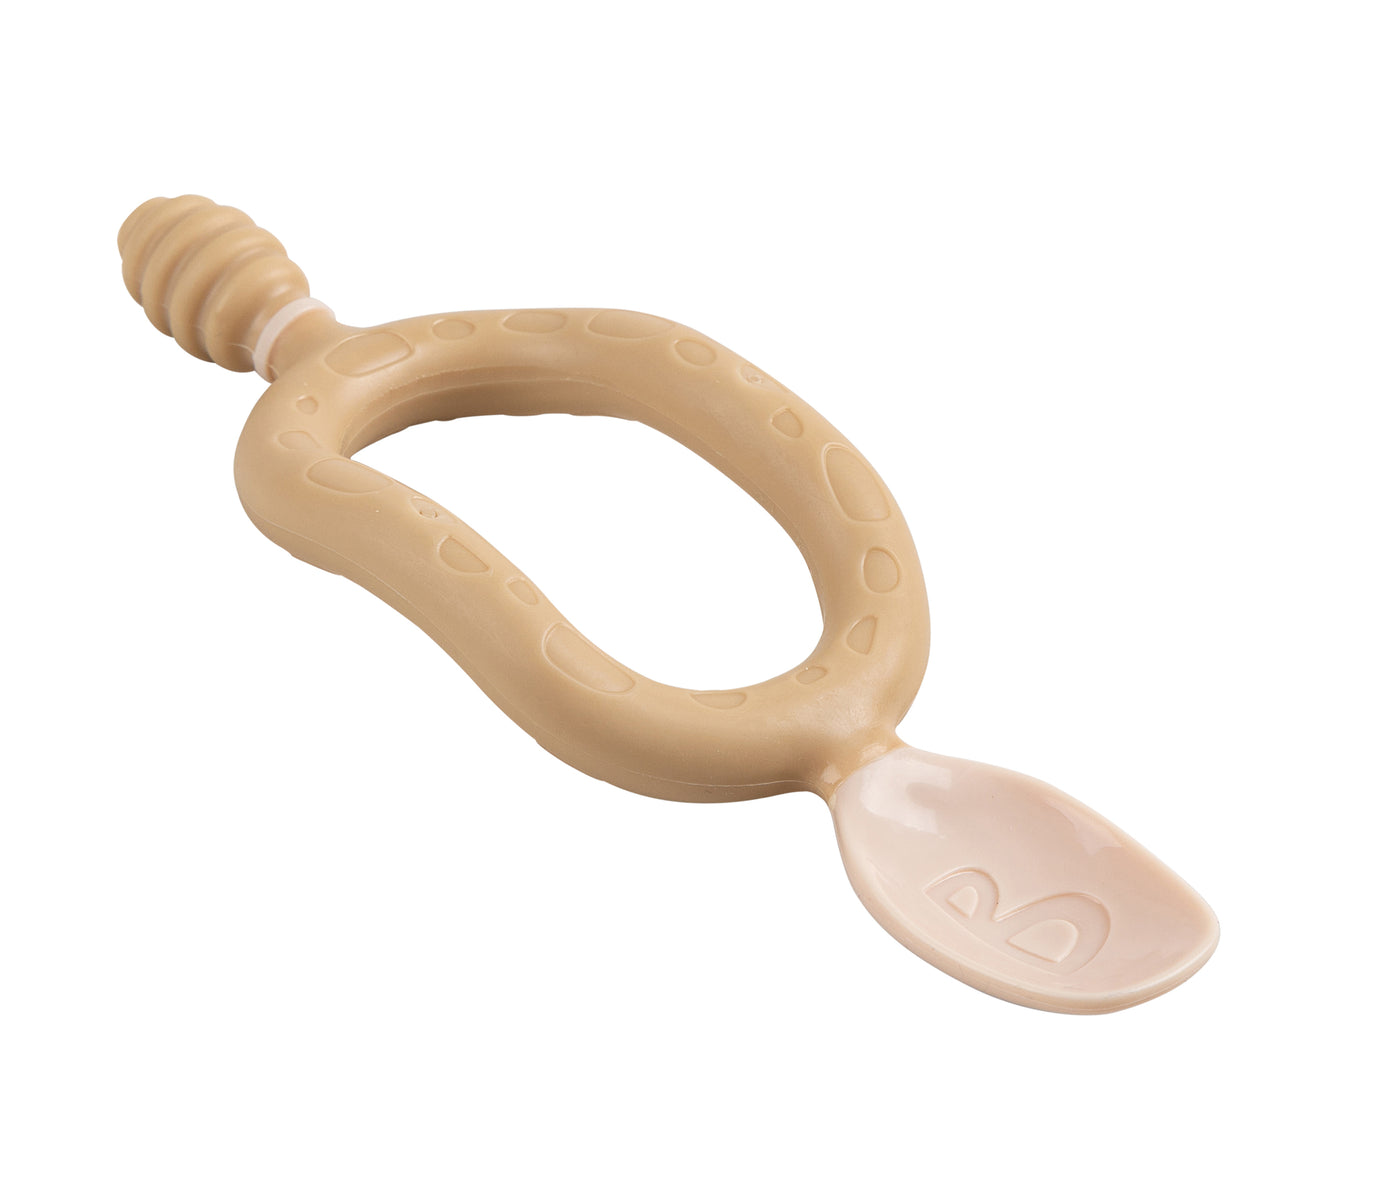 Dippit™ skeið - Multi-stage baby spoon